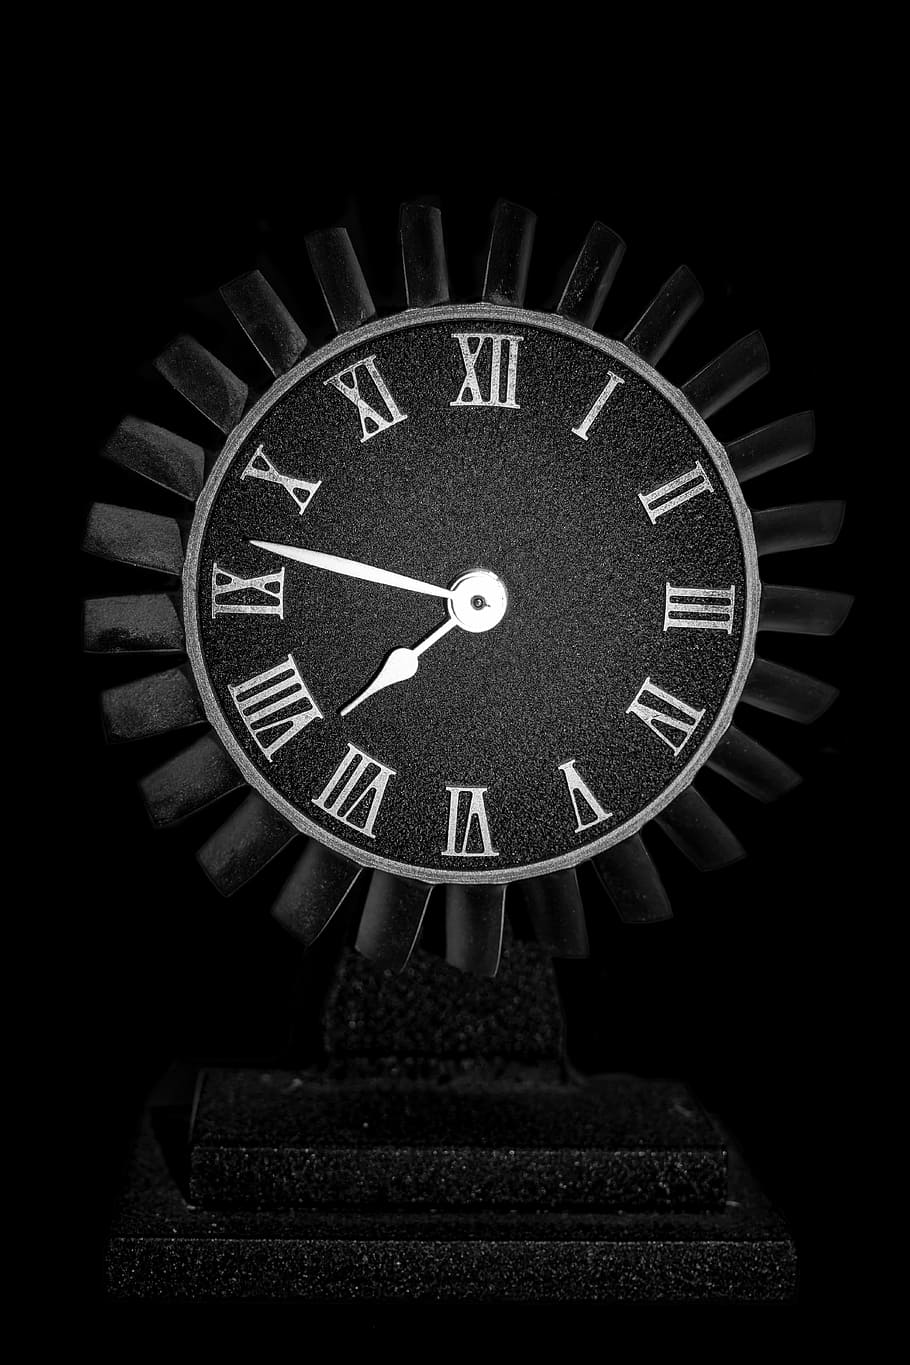 Negro, blanco, lectura del reloj analógico, 7:47, reloj, motor, viejo, avión, metal, duro